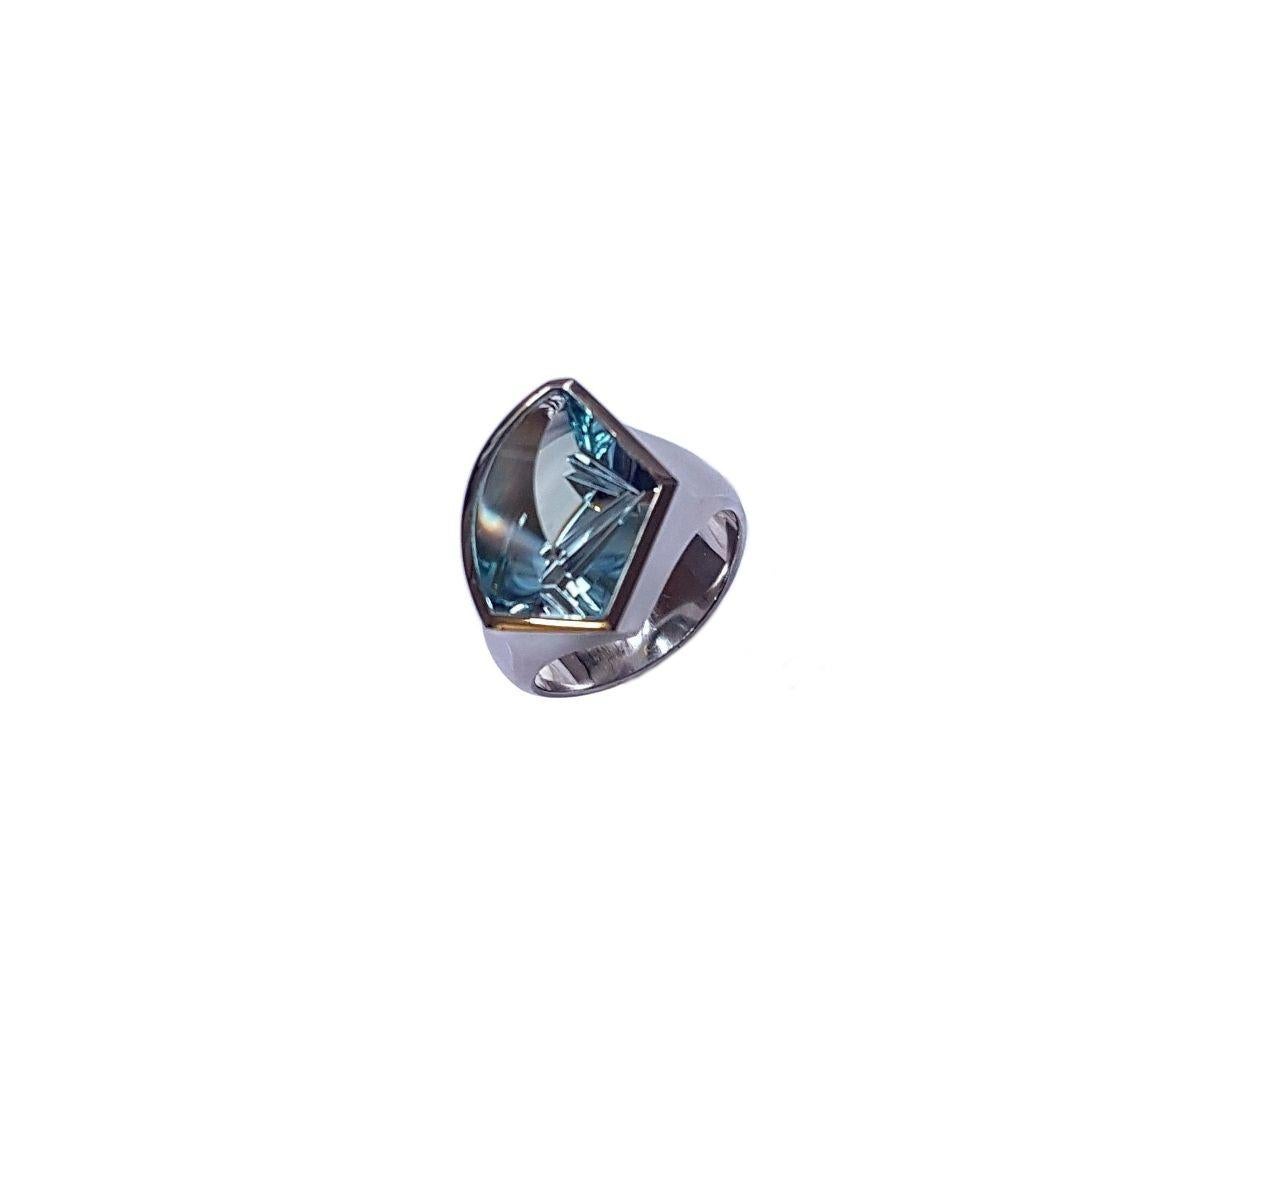 4.74 Carat Aquamarine Platinum Ring by Atelier Munsteiner 1